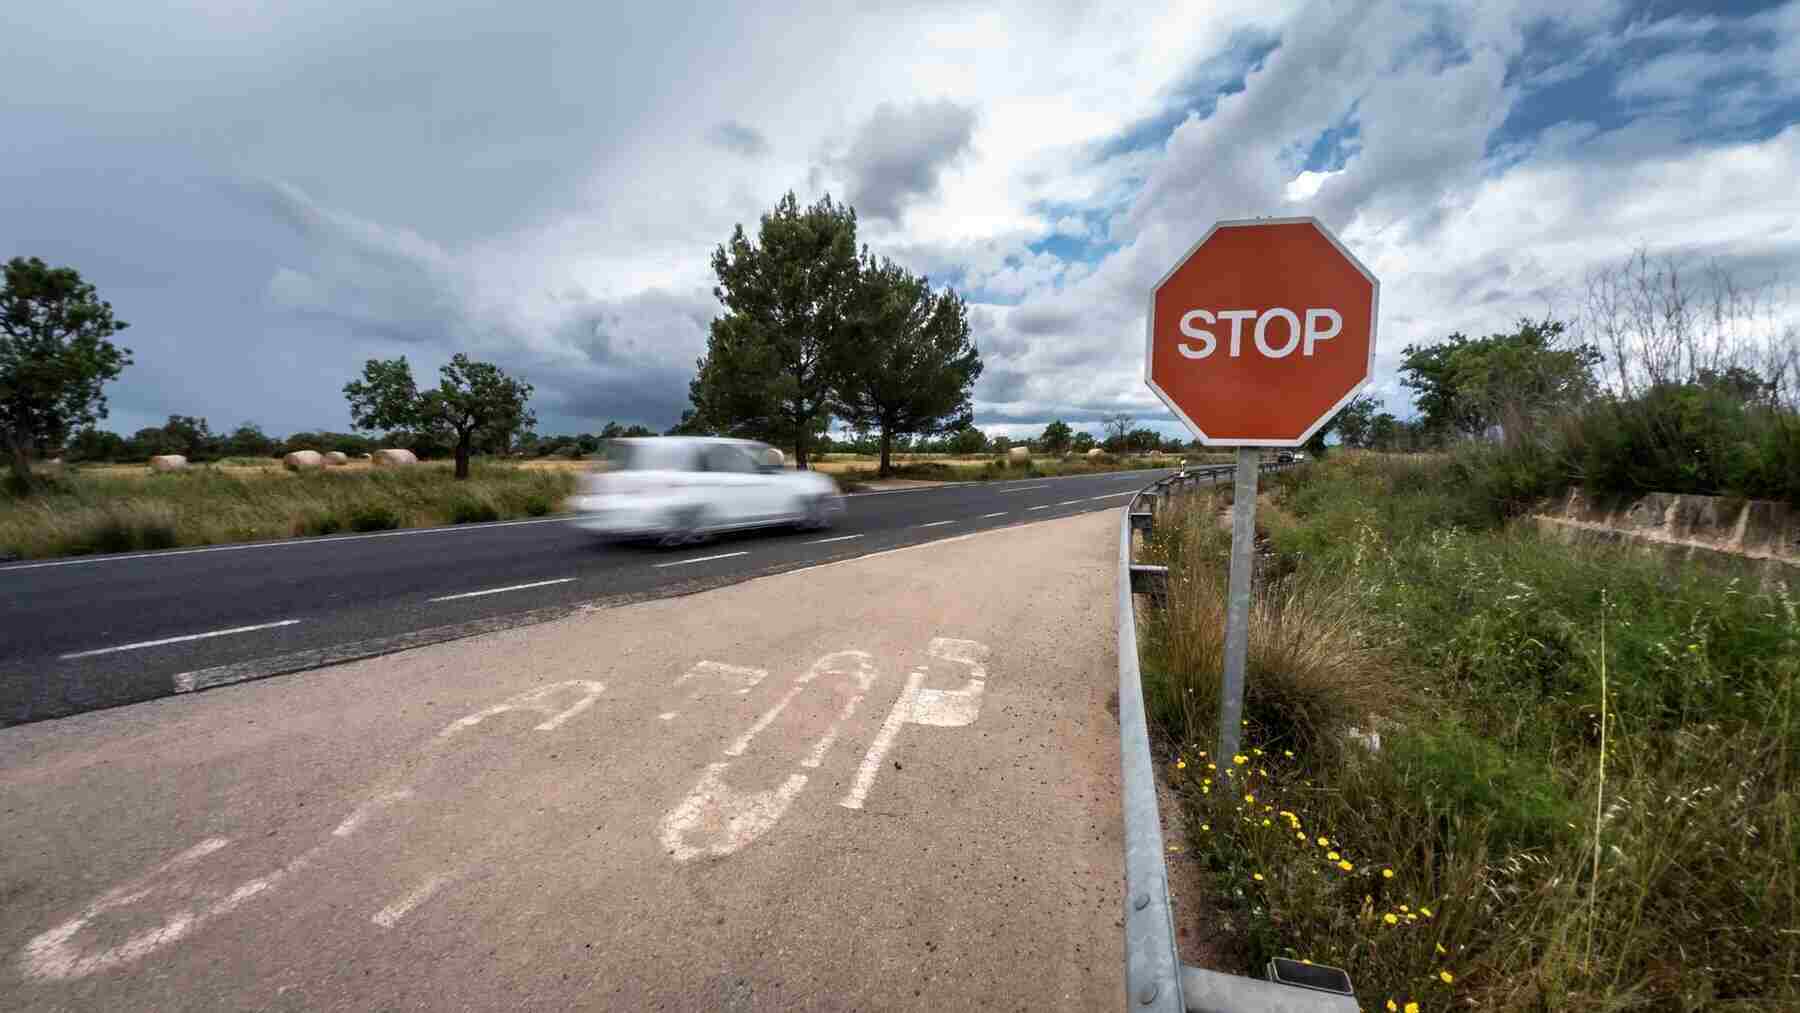 Existen señales de tráfico que todos conocemos como la de Stop y otras nuevas que desconocemos.